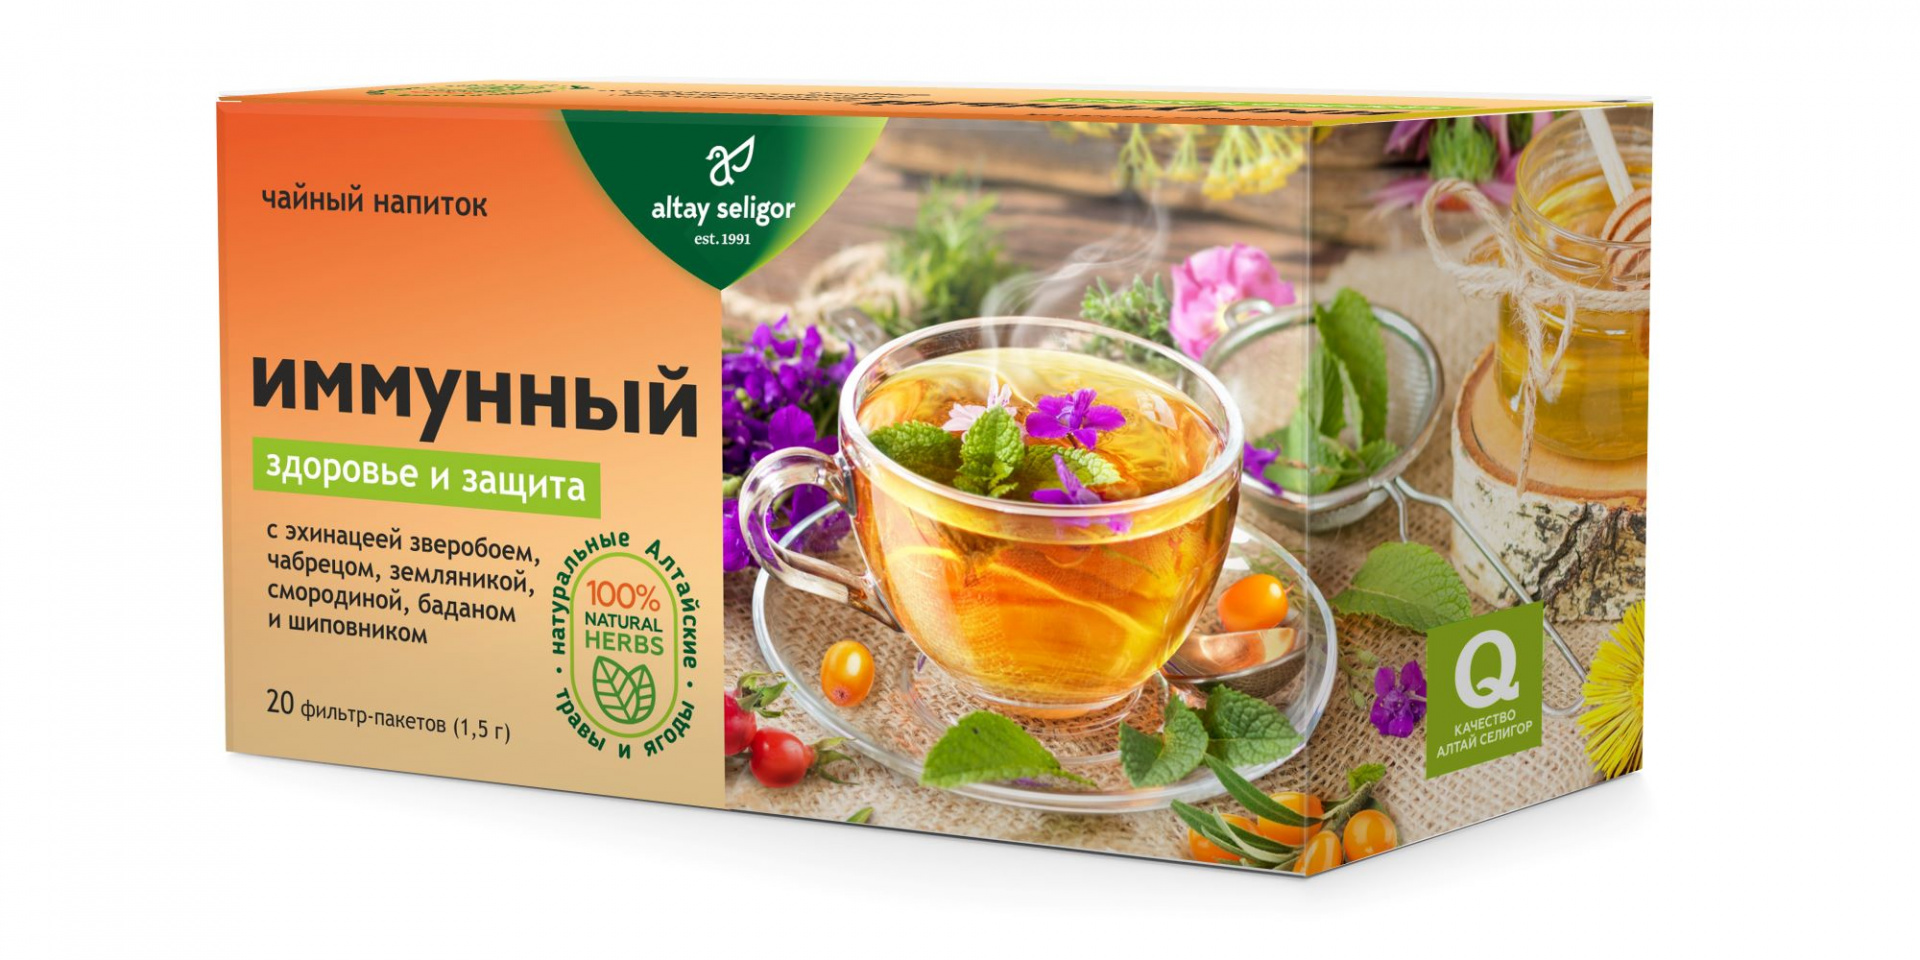 Травяной чай Иммунный, 20 ф-п*1,5 гр, Алтай Селигор